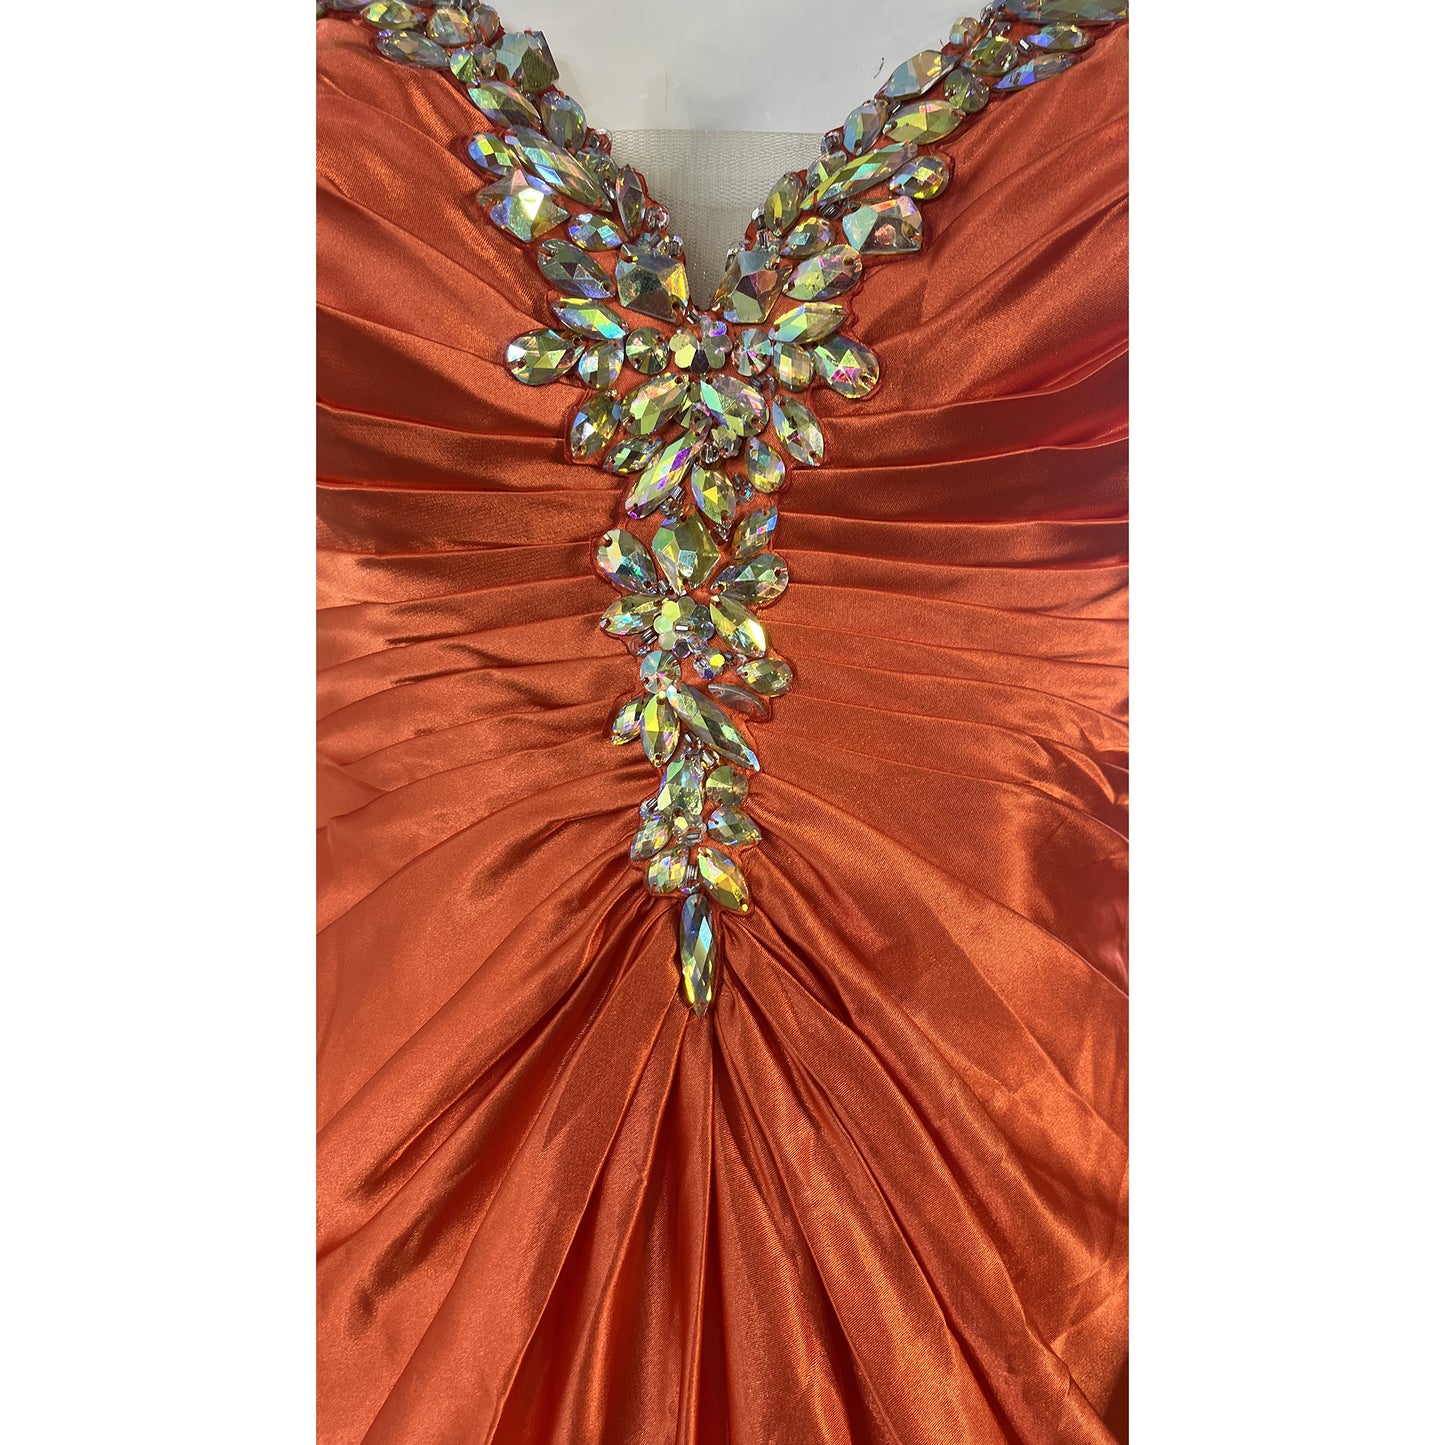 Tony Bowls Le Gala Gown Strapless Rhinestone Embellished Orange Size 4 SKU 000365-3